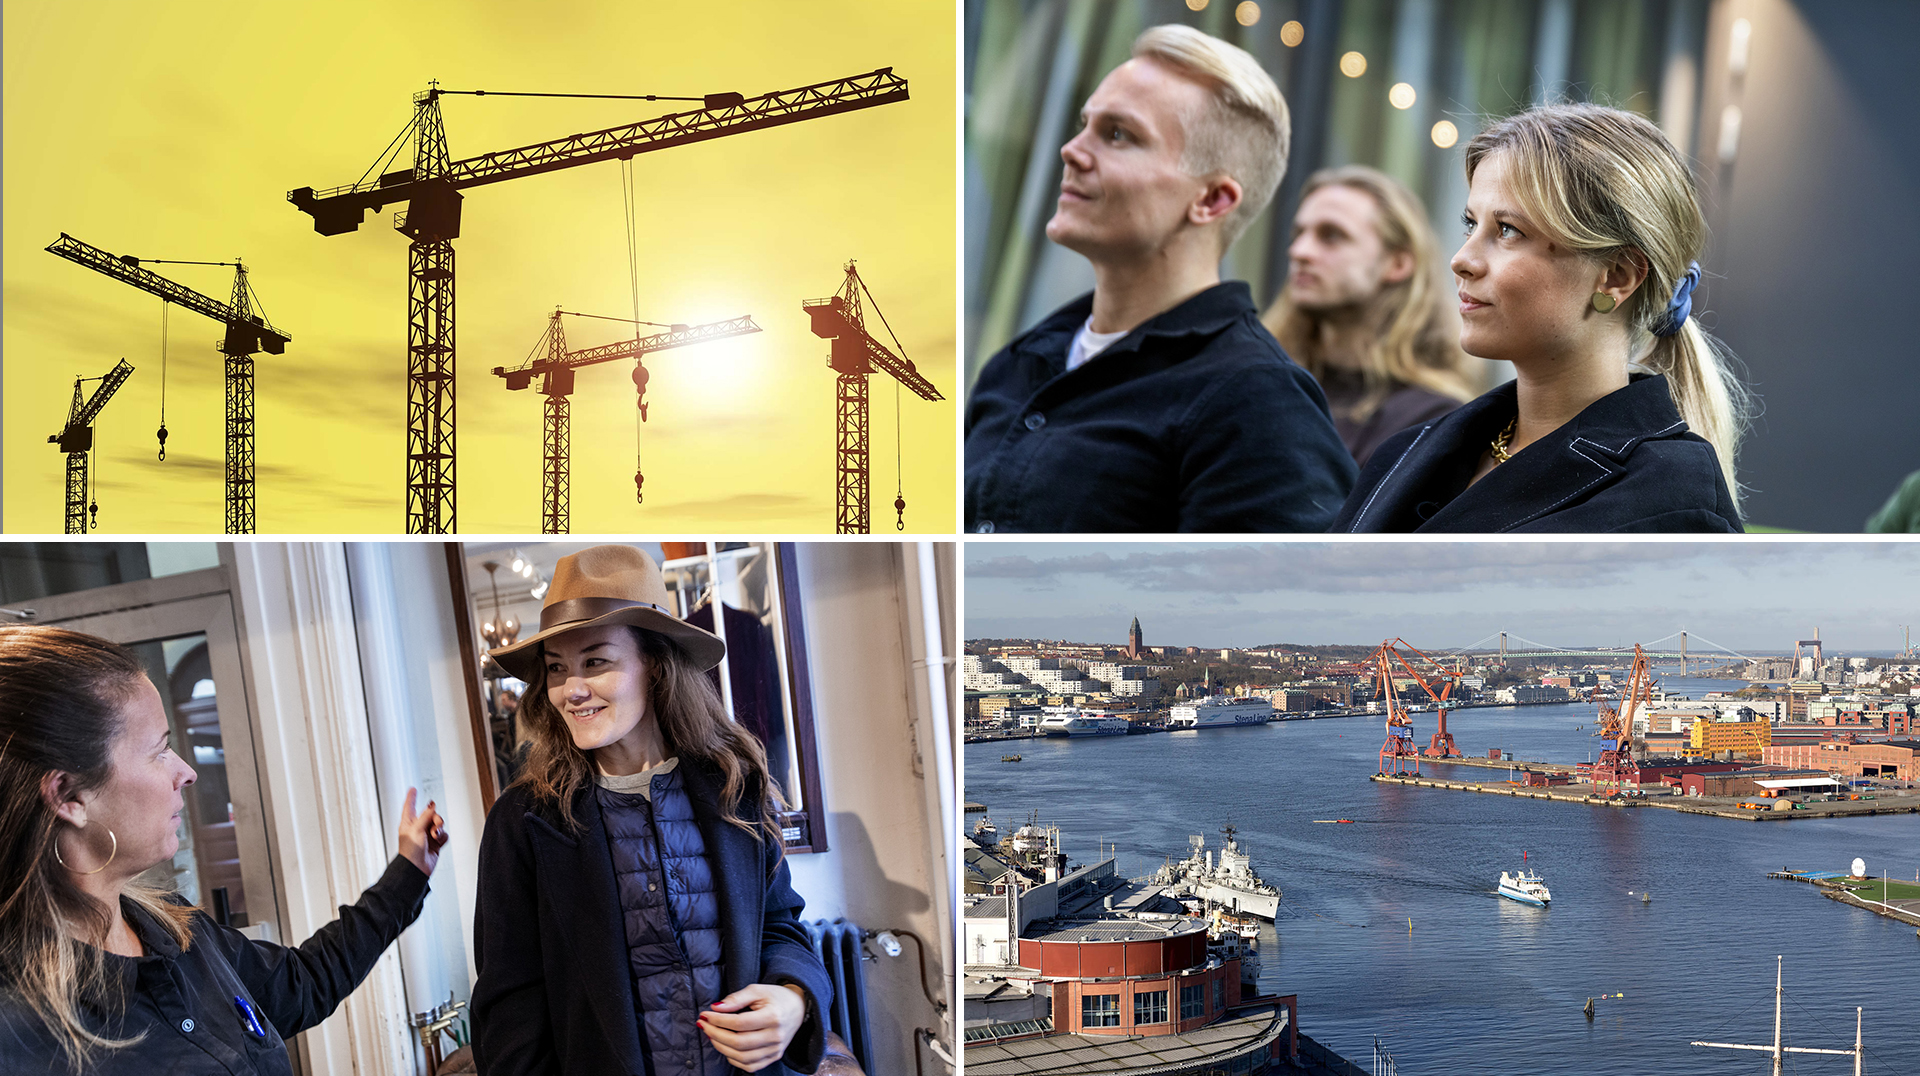 Kollage med miljö- och människobilder som symboliserar Göteborg i utveckling. 